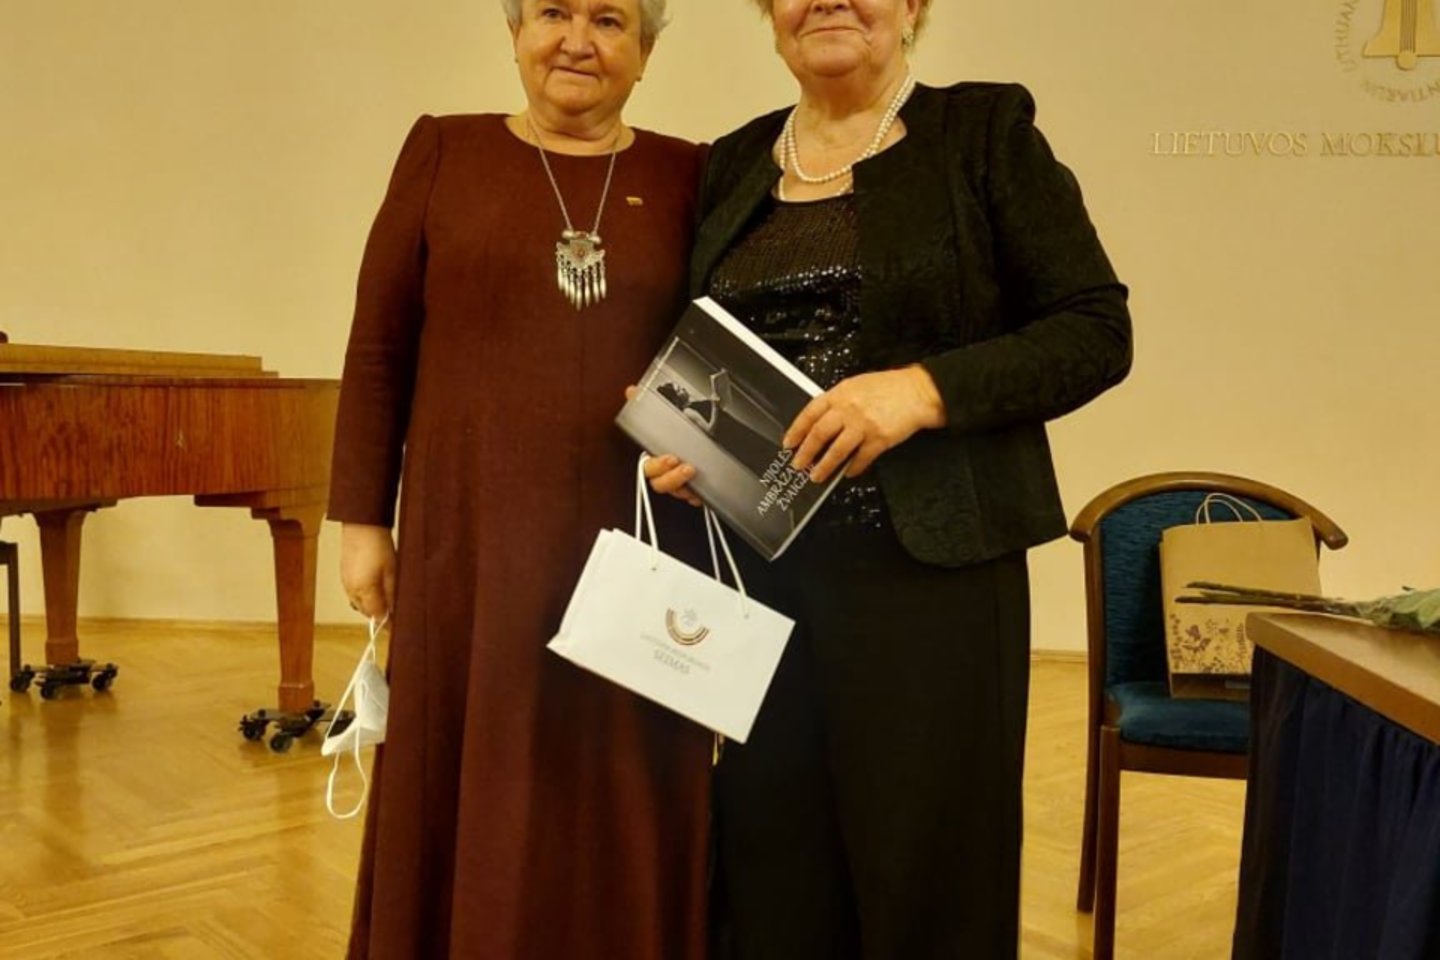 Knygos autorė R.Aleknaitė-Bieliauskienė (dešinėje) su prof. V.Targamadze.